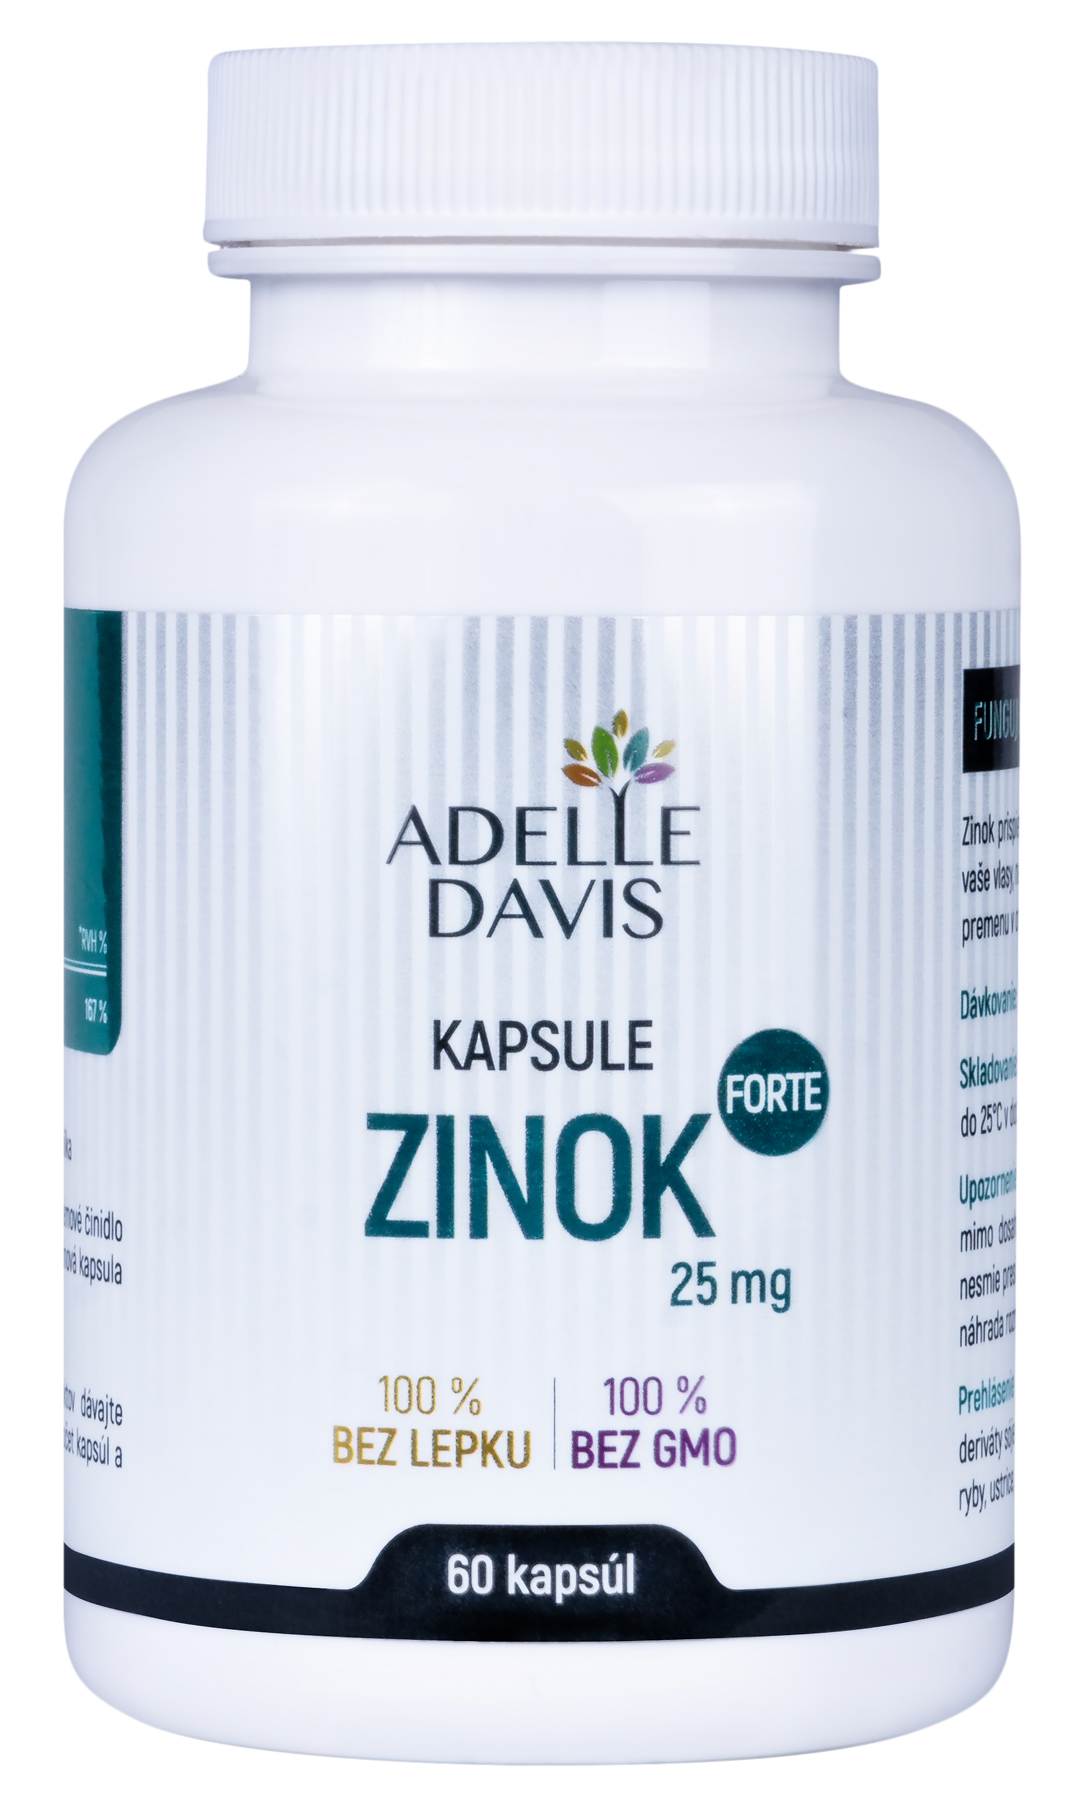 Adelle Davis Adelle Davis - Zinek Forte Adelle Davis, 25 mg, 60 kapslí 25mg